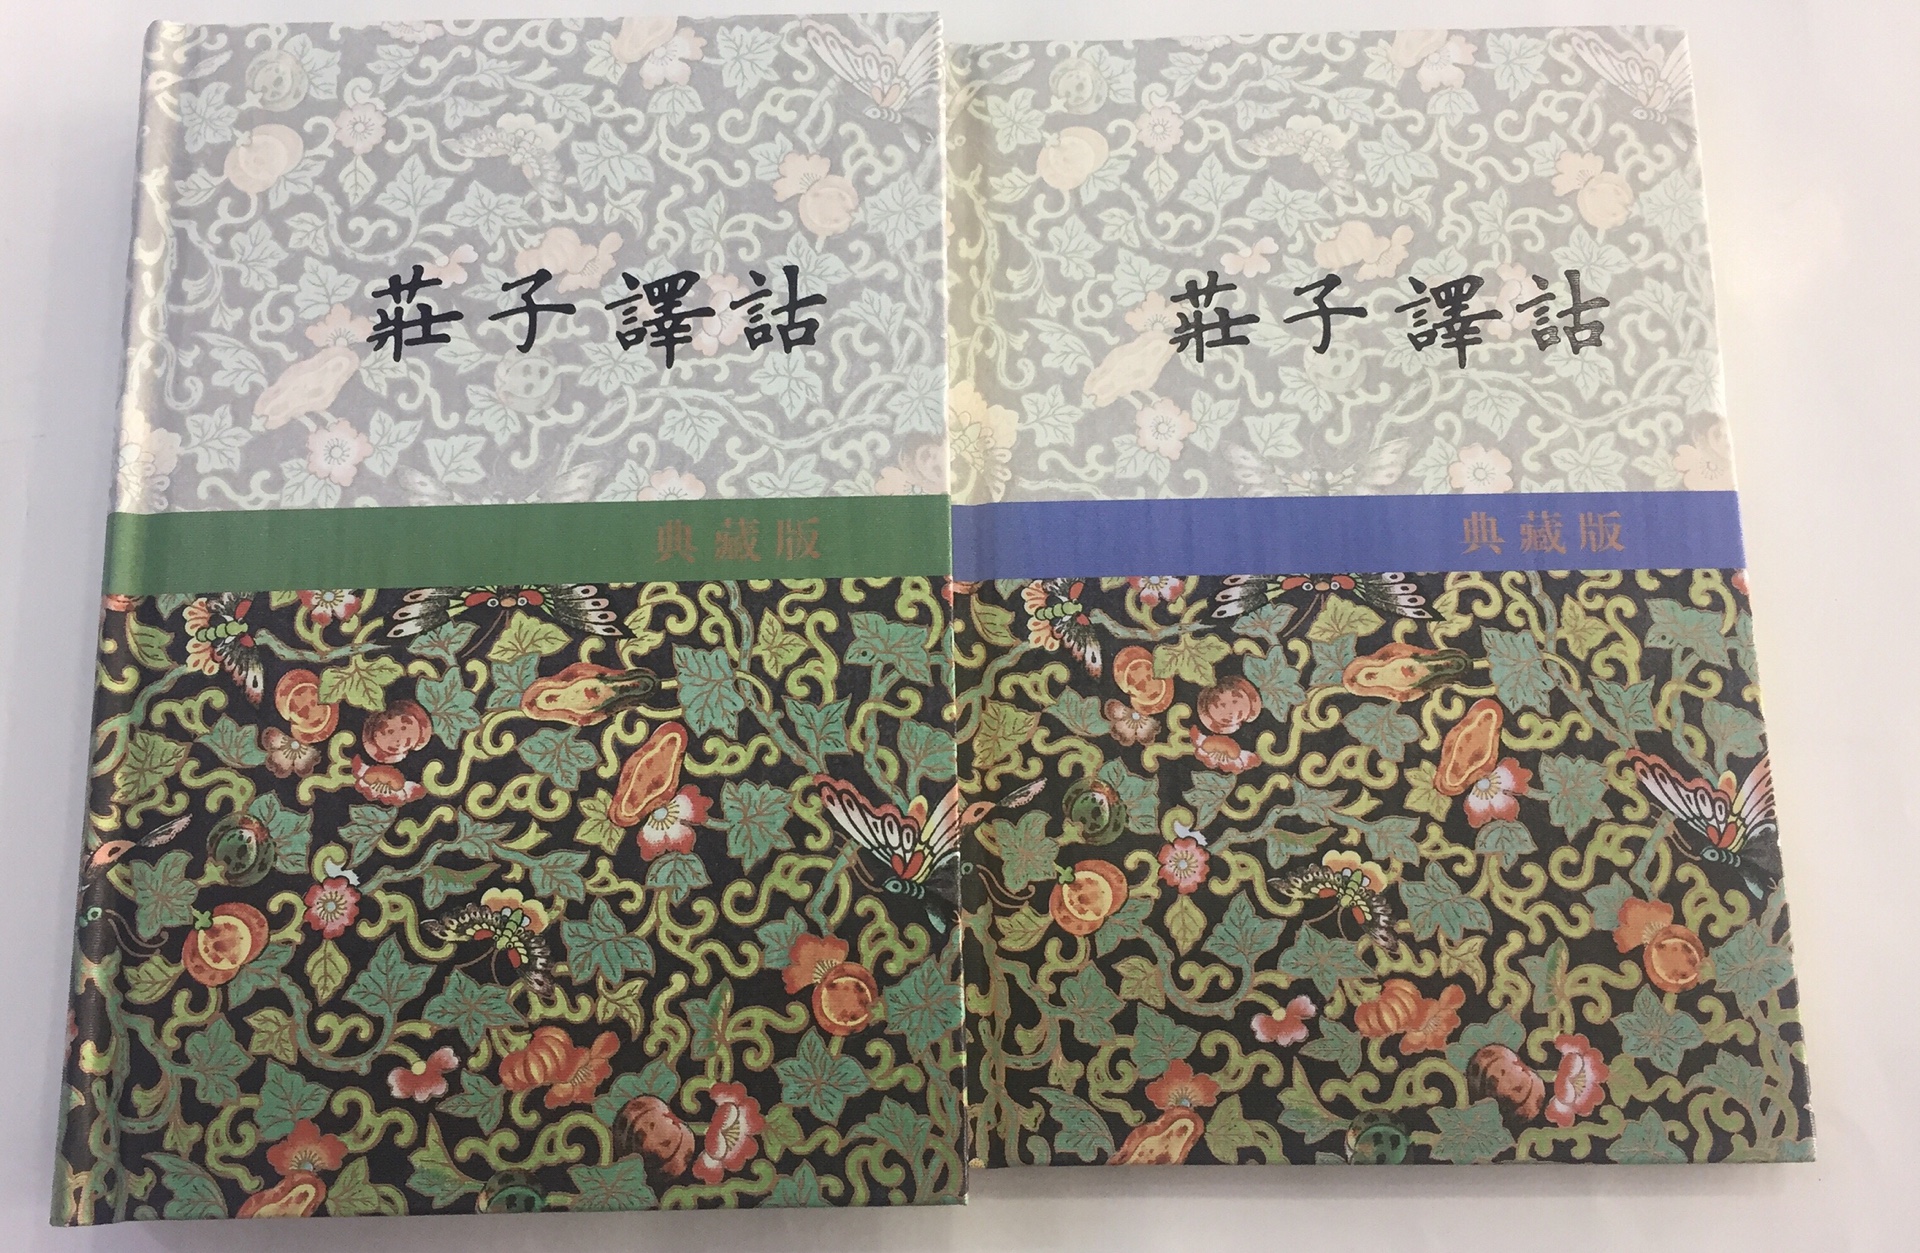 上海古籍的杨柳桥注译，精装本，上下册厚薄悬殊。活动价格还是比较吸引人。